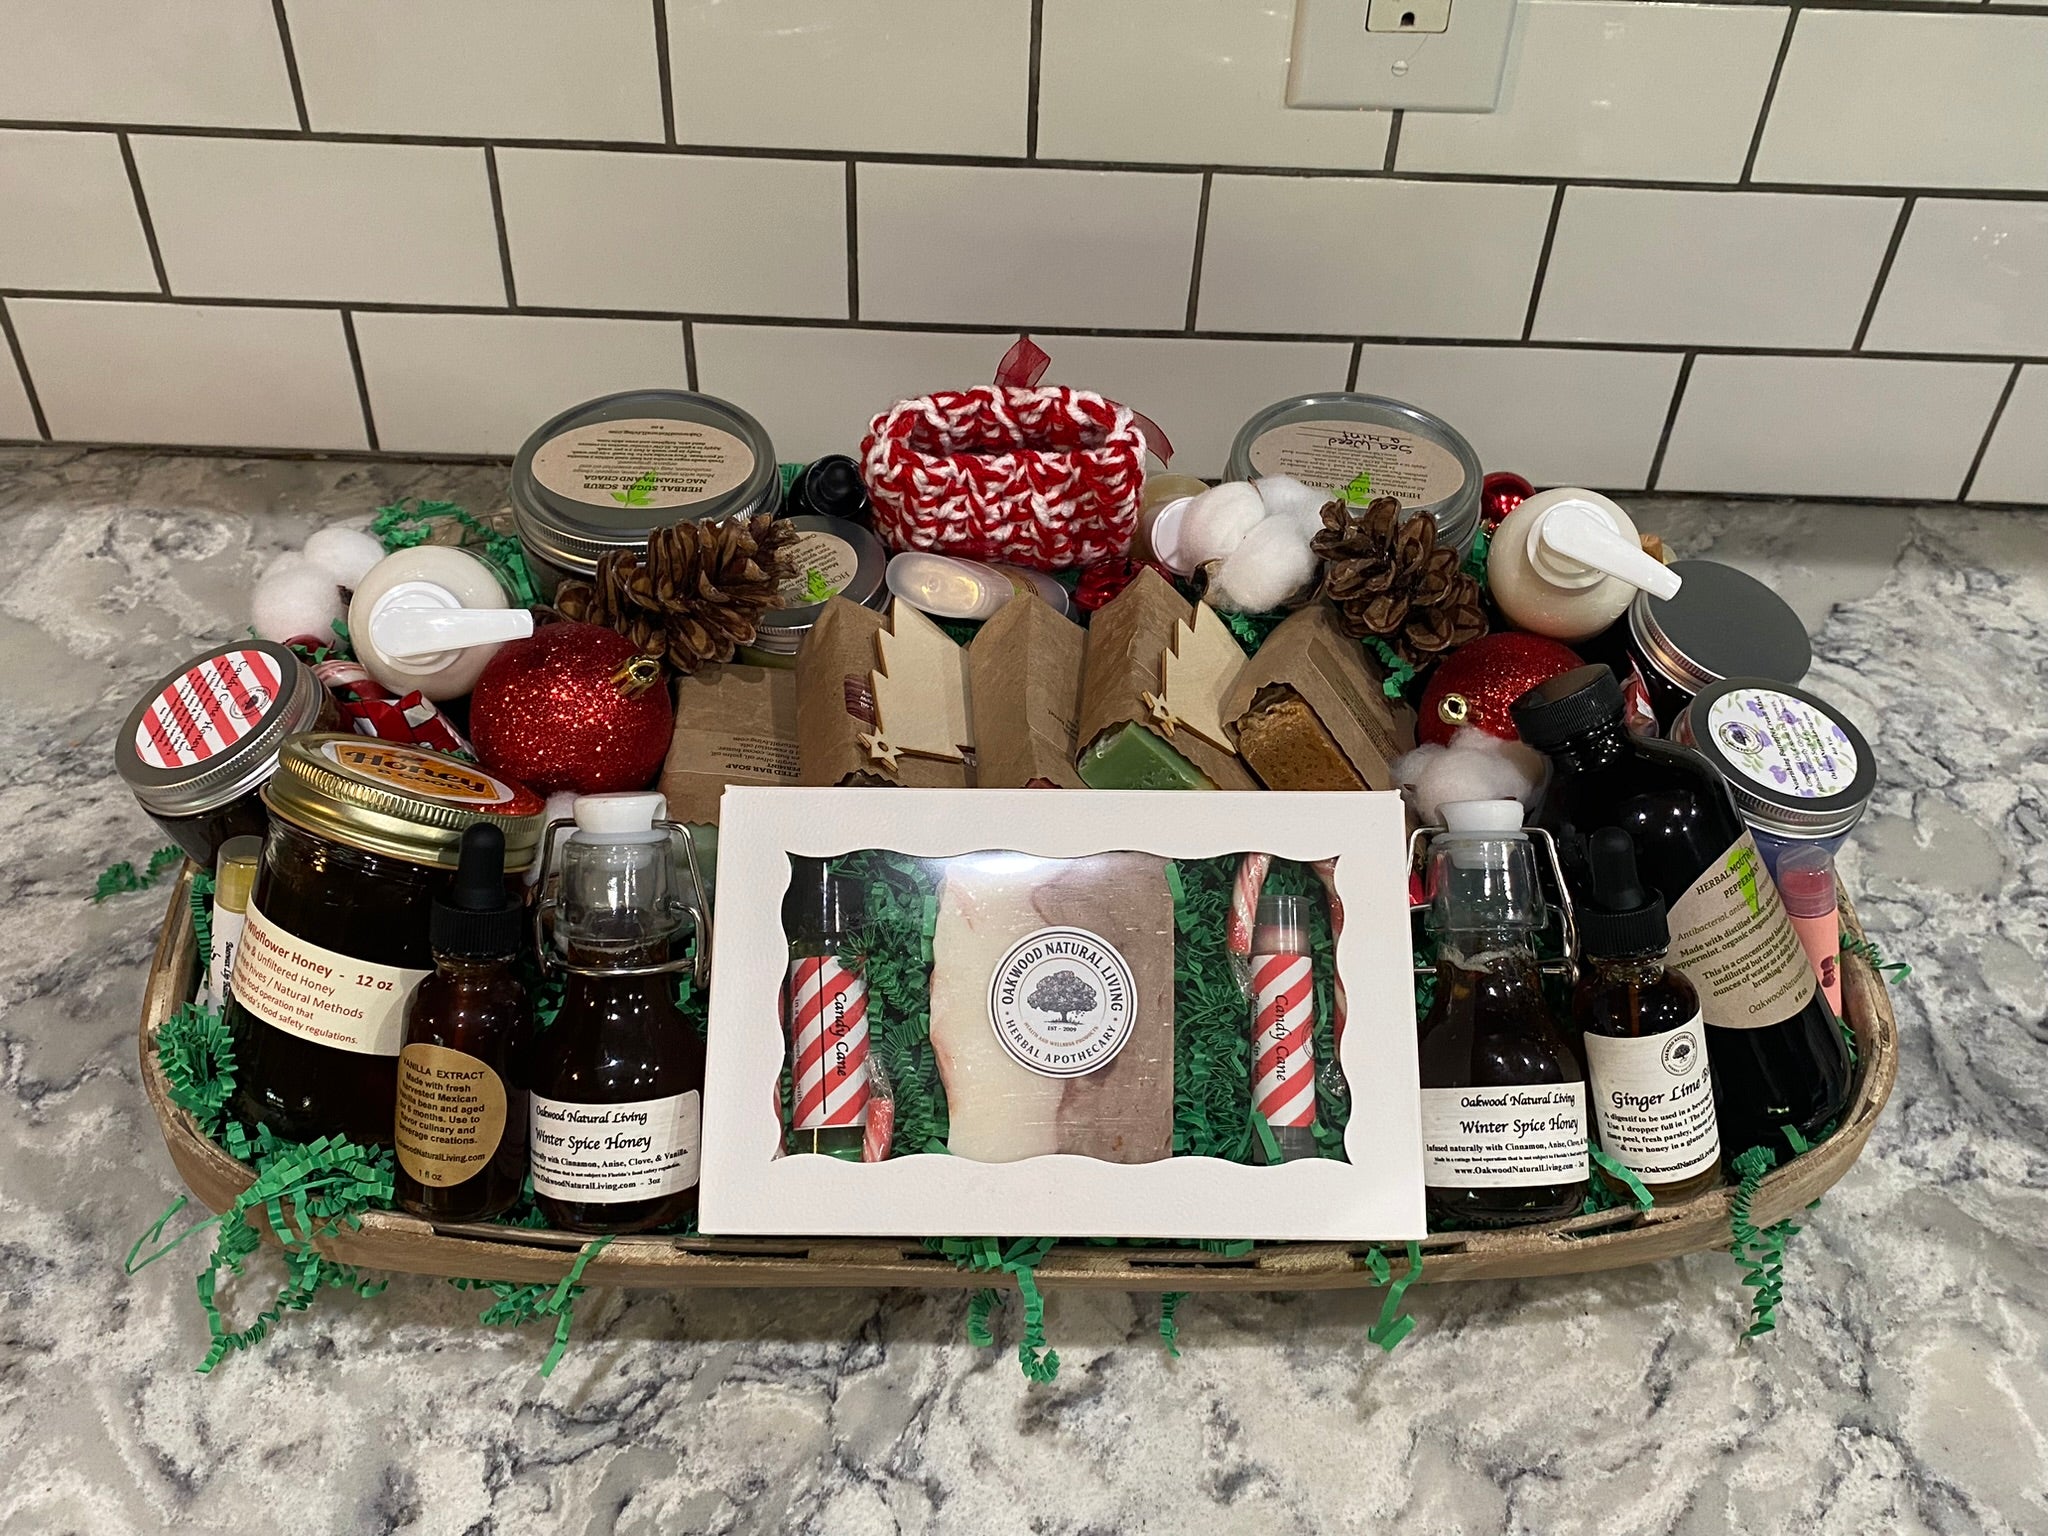 DIY Gift Basket Kit, Natural Split Willow, Empty Gift Basket, Gift Basket  Wrapping Kit, Gift Basket Packaging, Gift Basket Making Supplies 